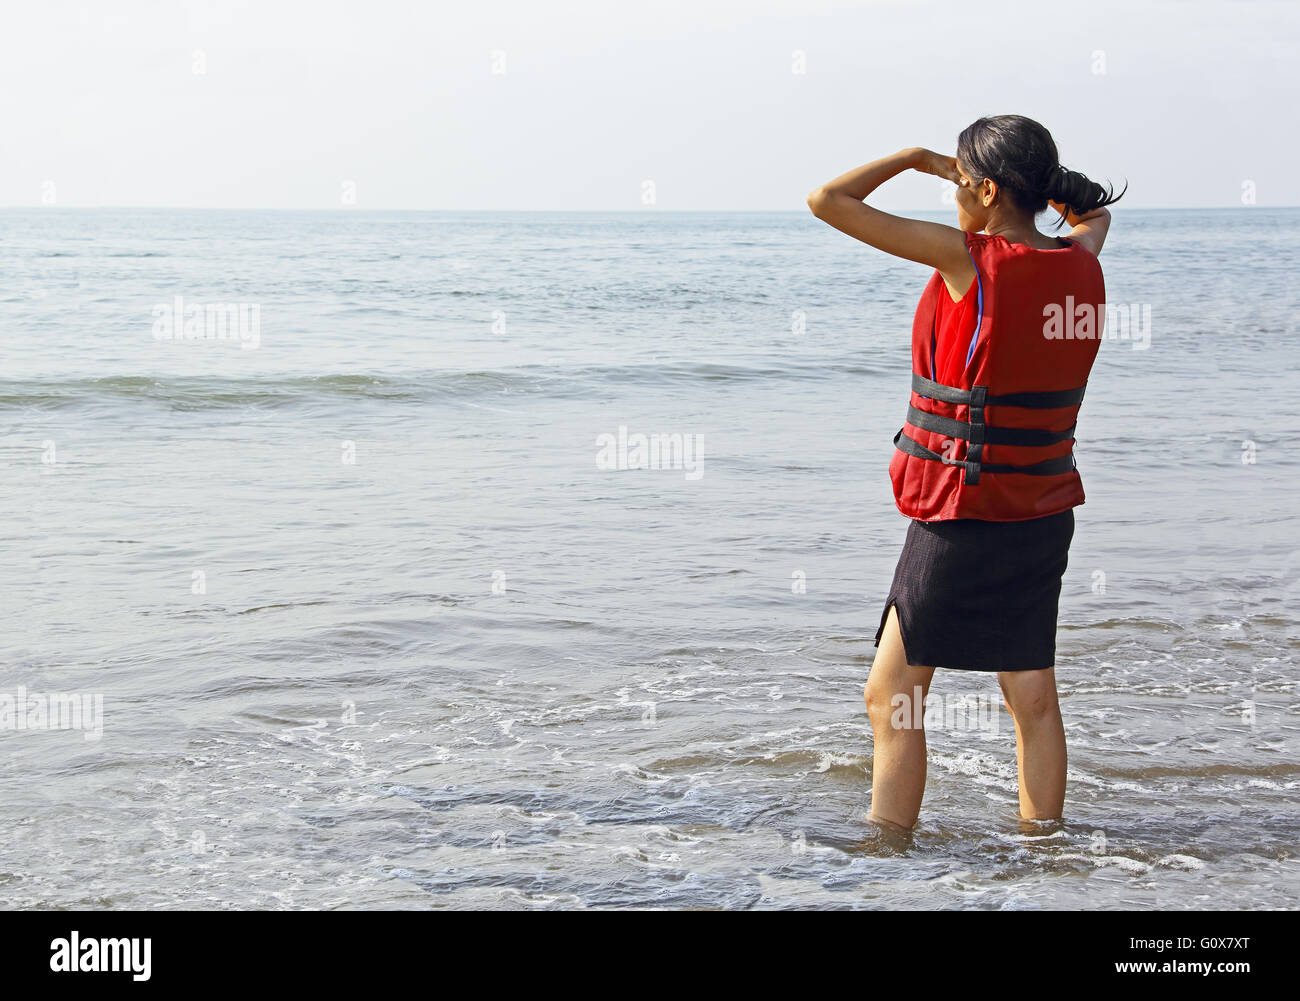 Jovencita en chaleco salvavidas esperando en la playa en Goa, India, preparado para actividades de deporte acuático Foto de stock